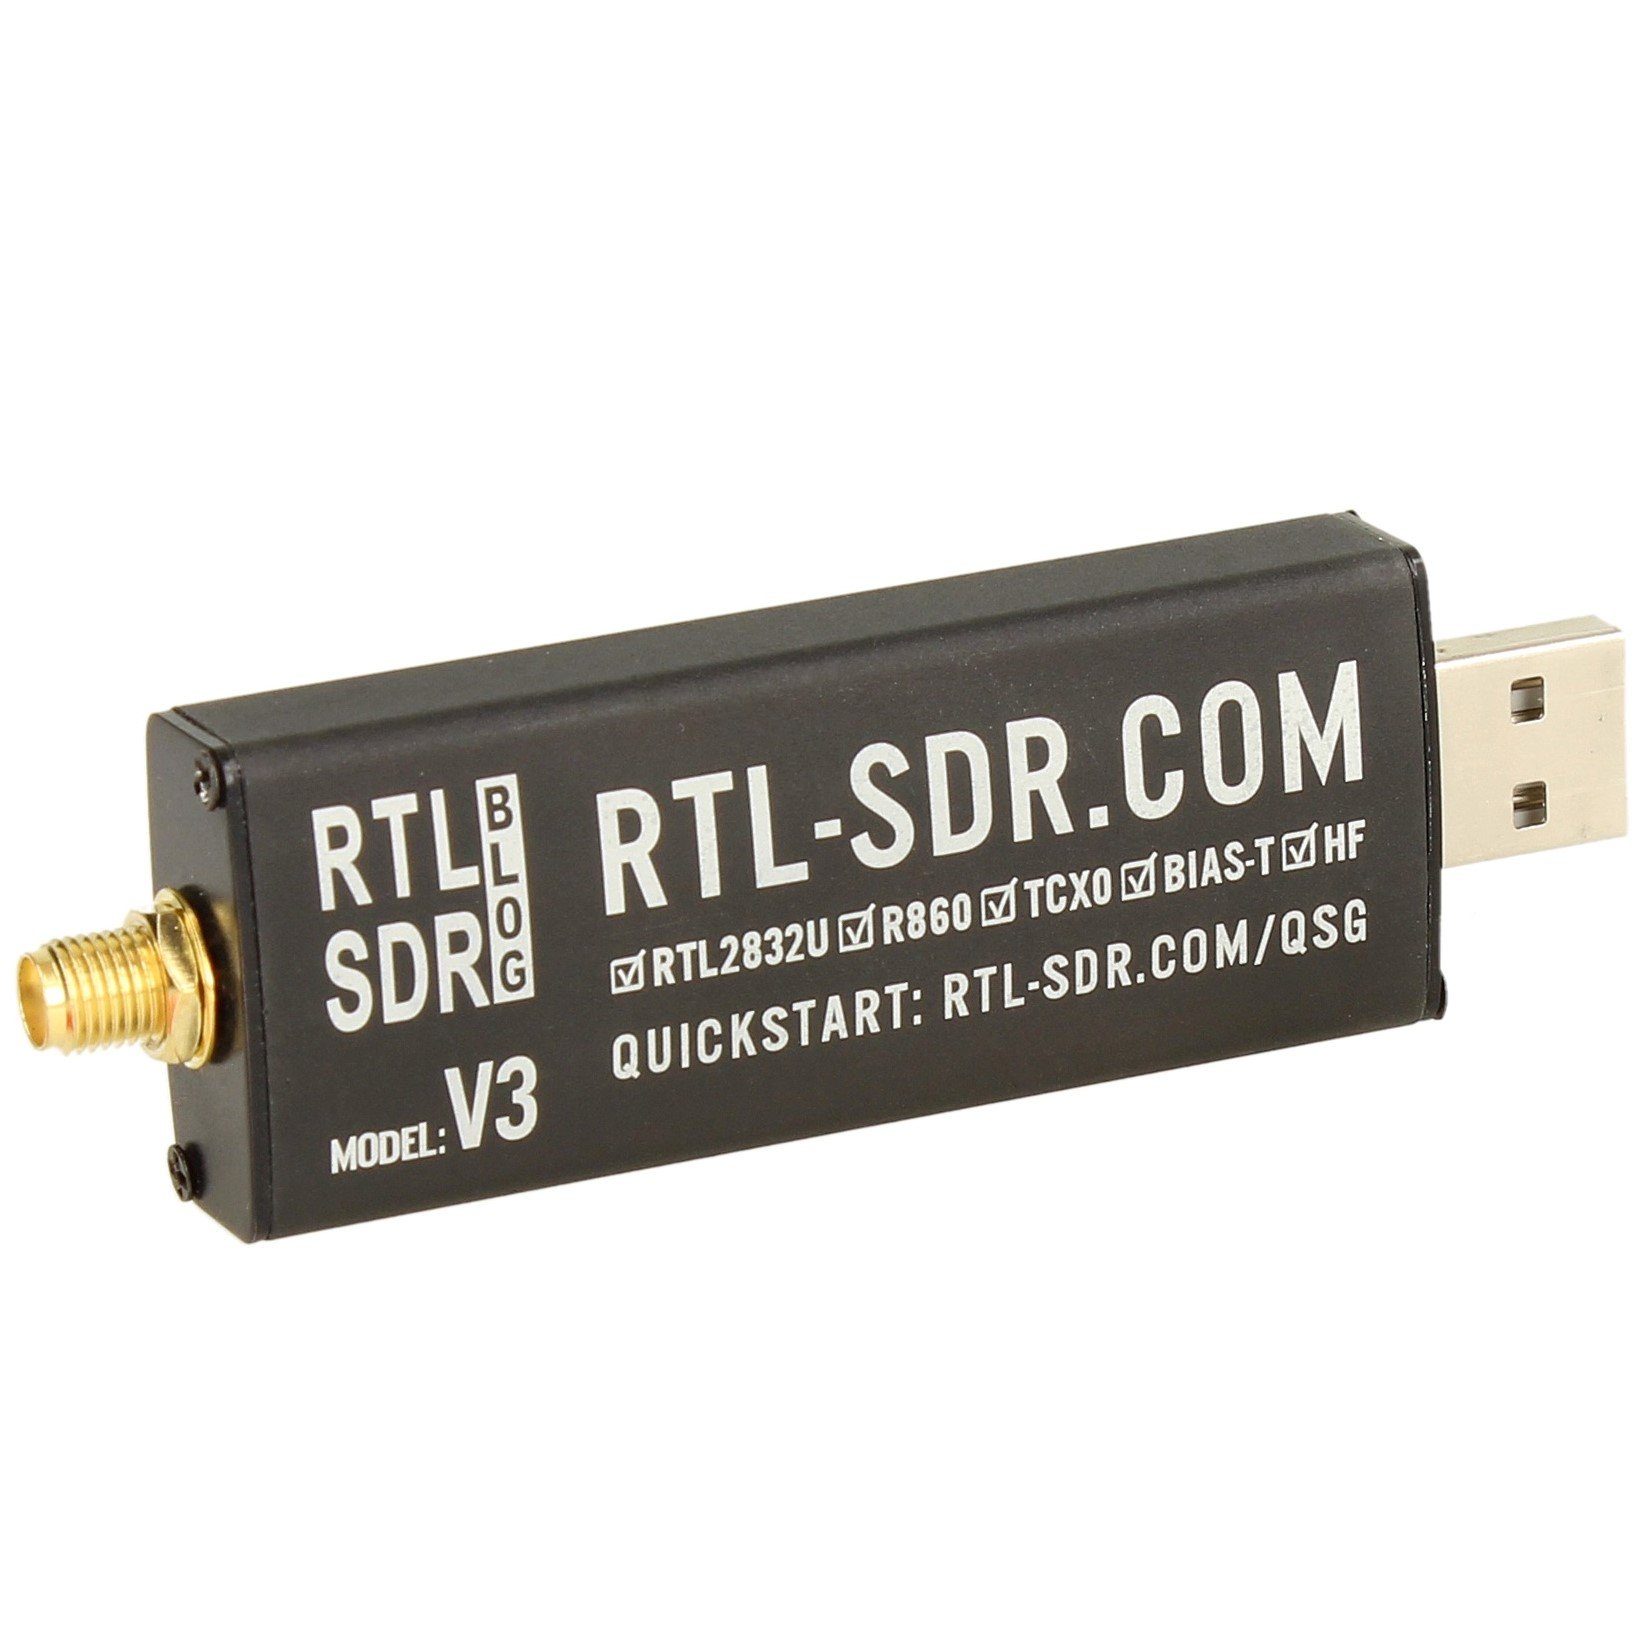 Antennen Funkgerät SDR R820T2 RTL2832U V3 Blog SET Impulsfoto RTL-SDR Empfänger Tee HF Bias